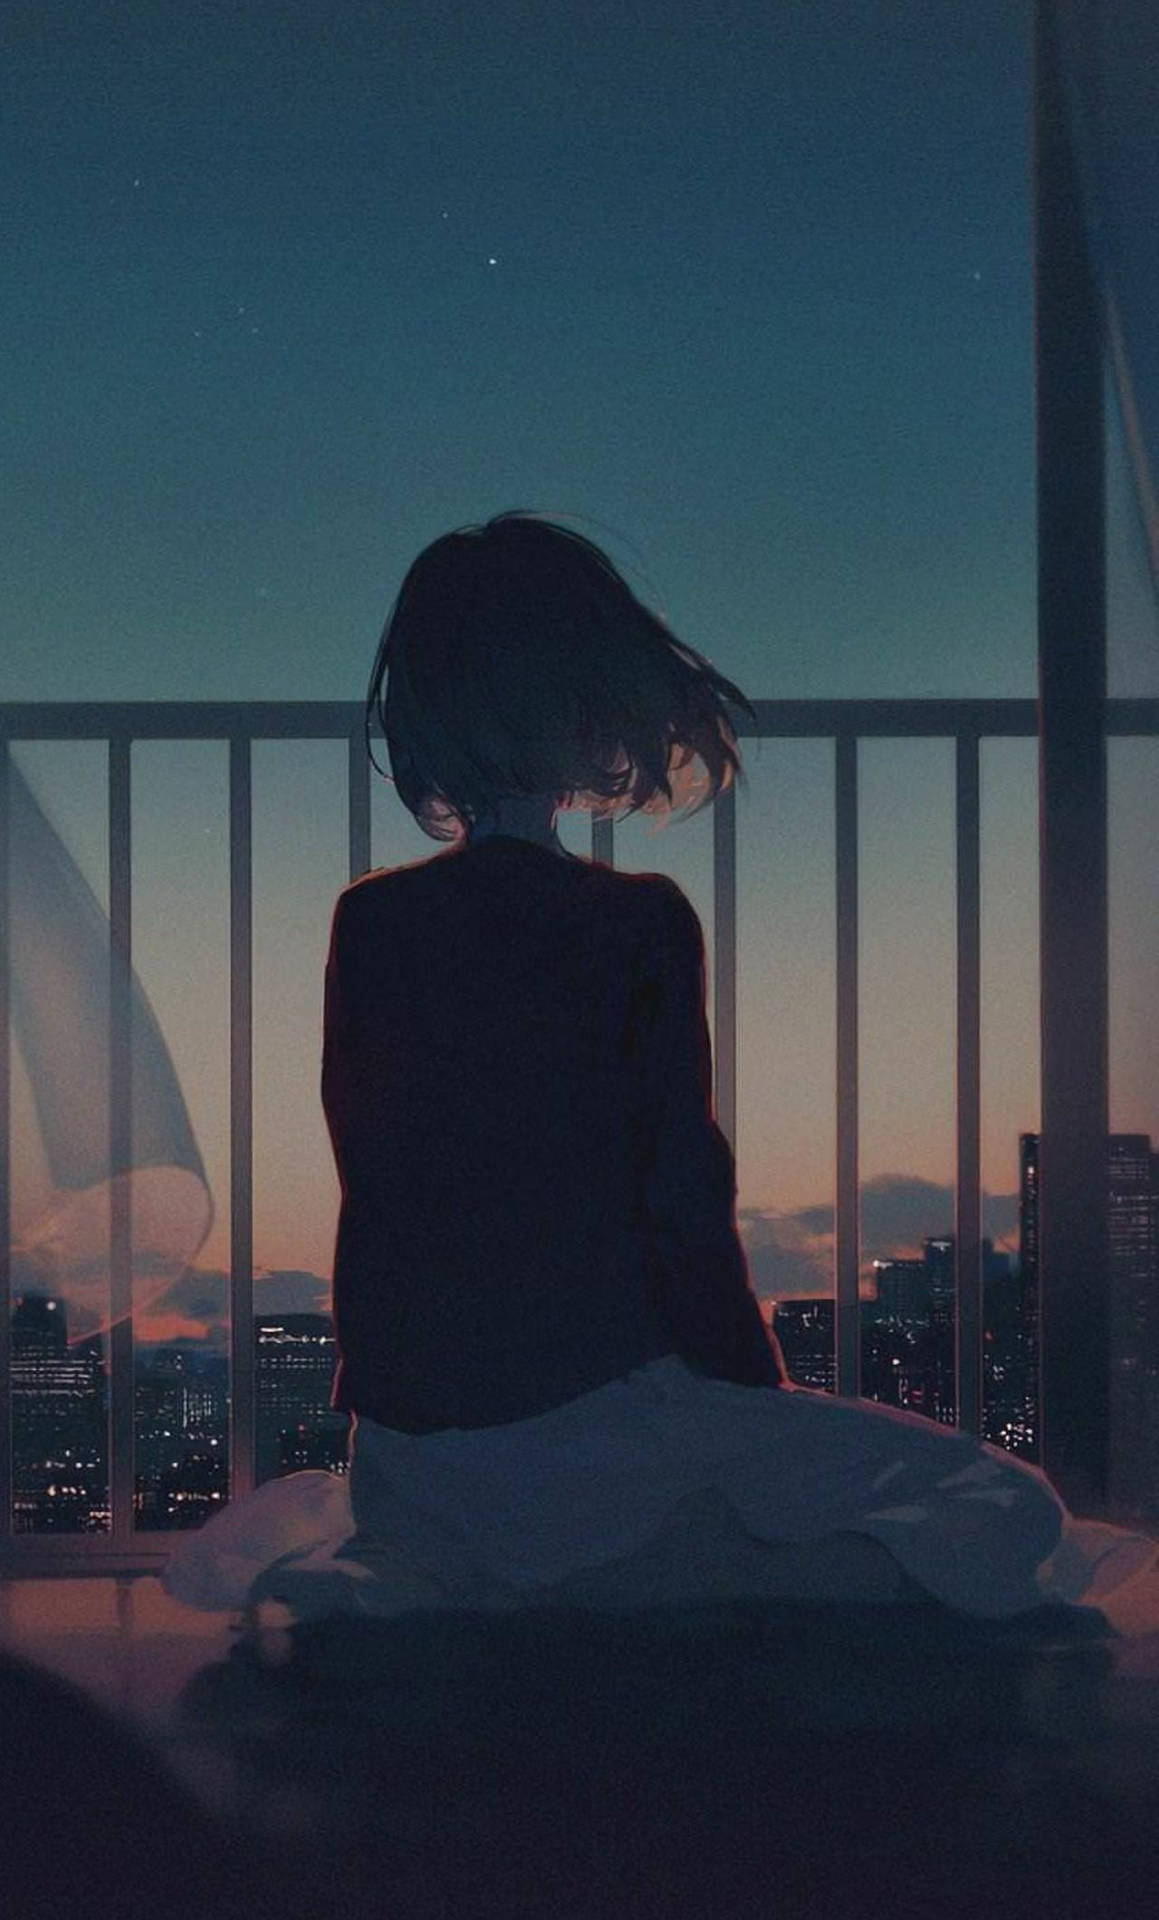 Sad Aesthetic Anime Girl On Balcony Wallpaper